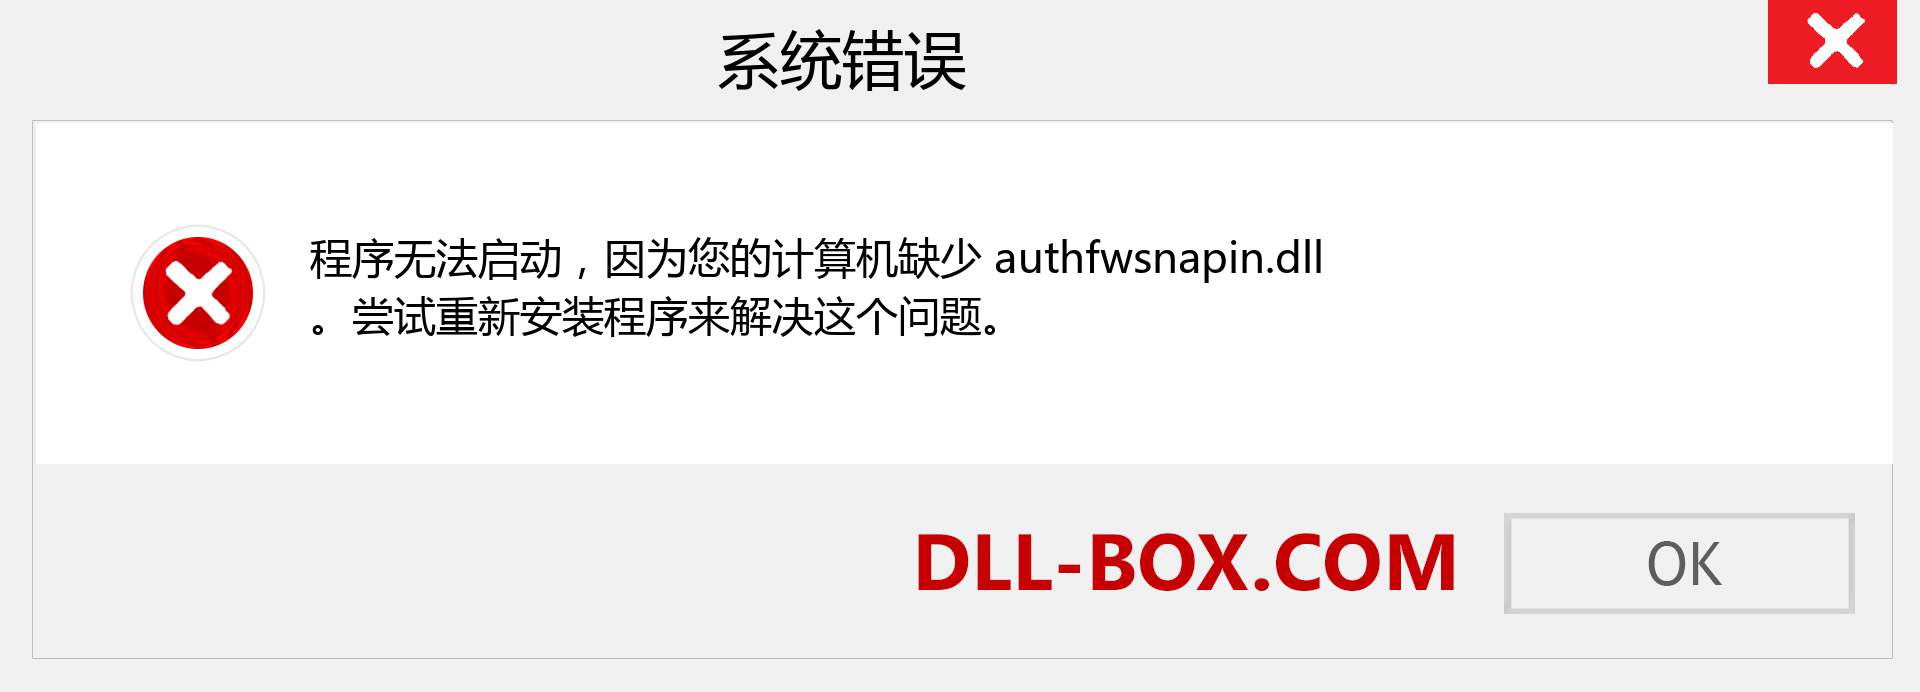 authfwsnapin.dll 文件丢失？。 适用于 Windows 7、8、10 的下载 - 修复 Windows、照片、图像上的 authfwsnapin dll 丢失错误